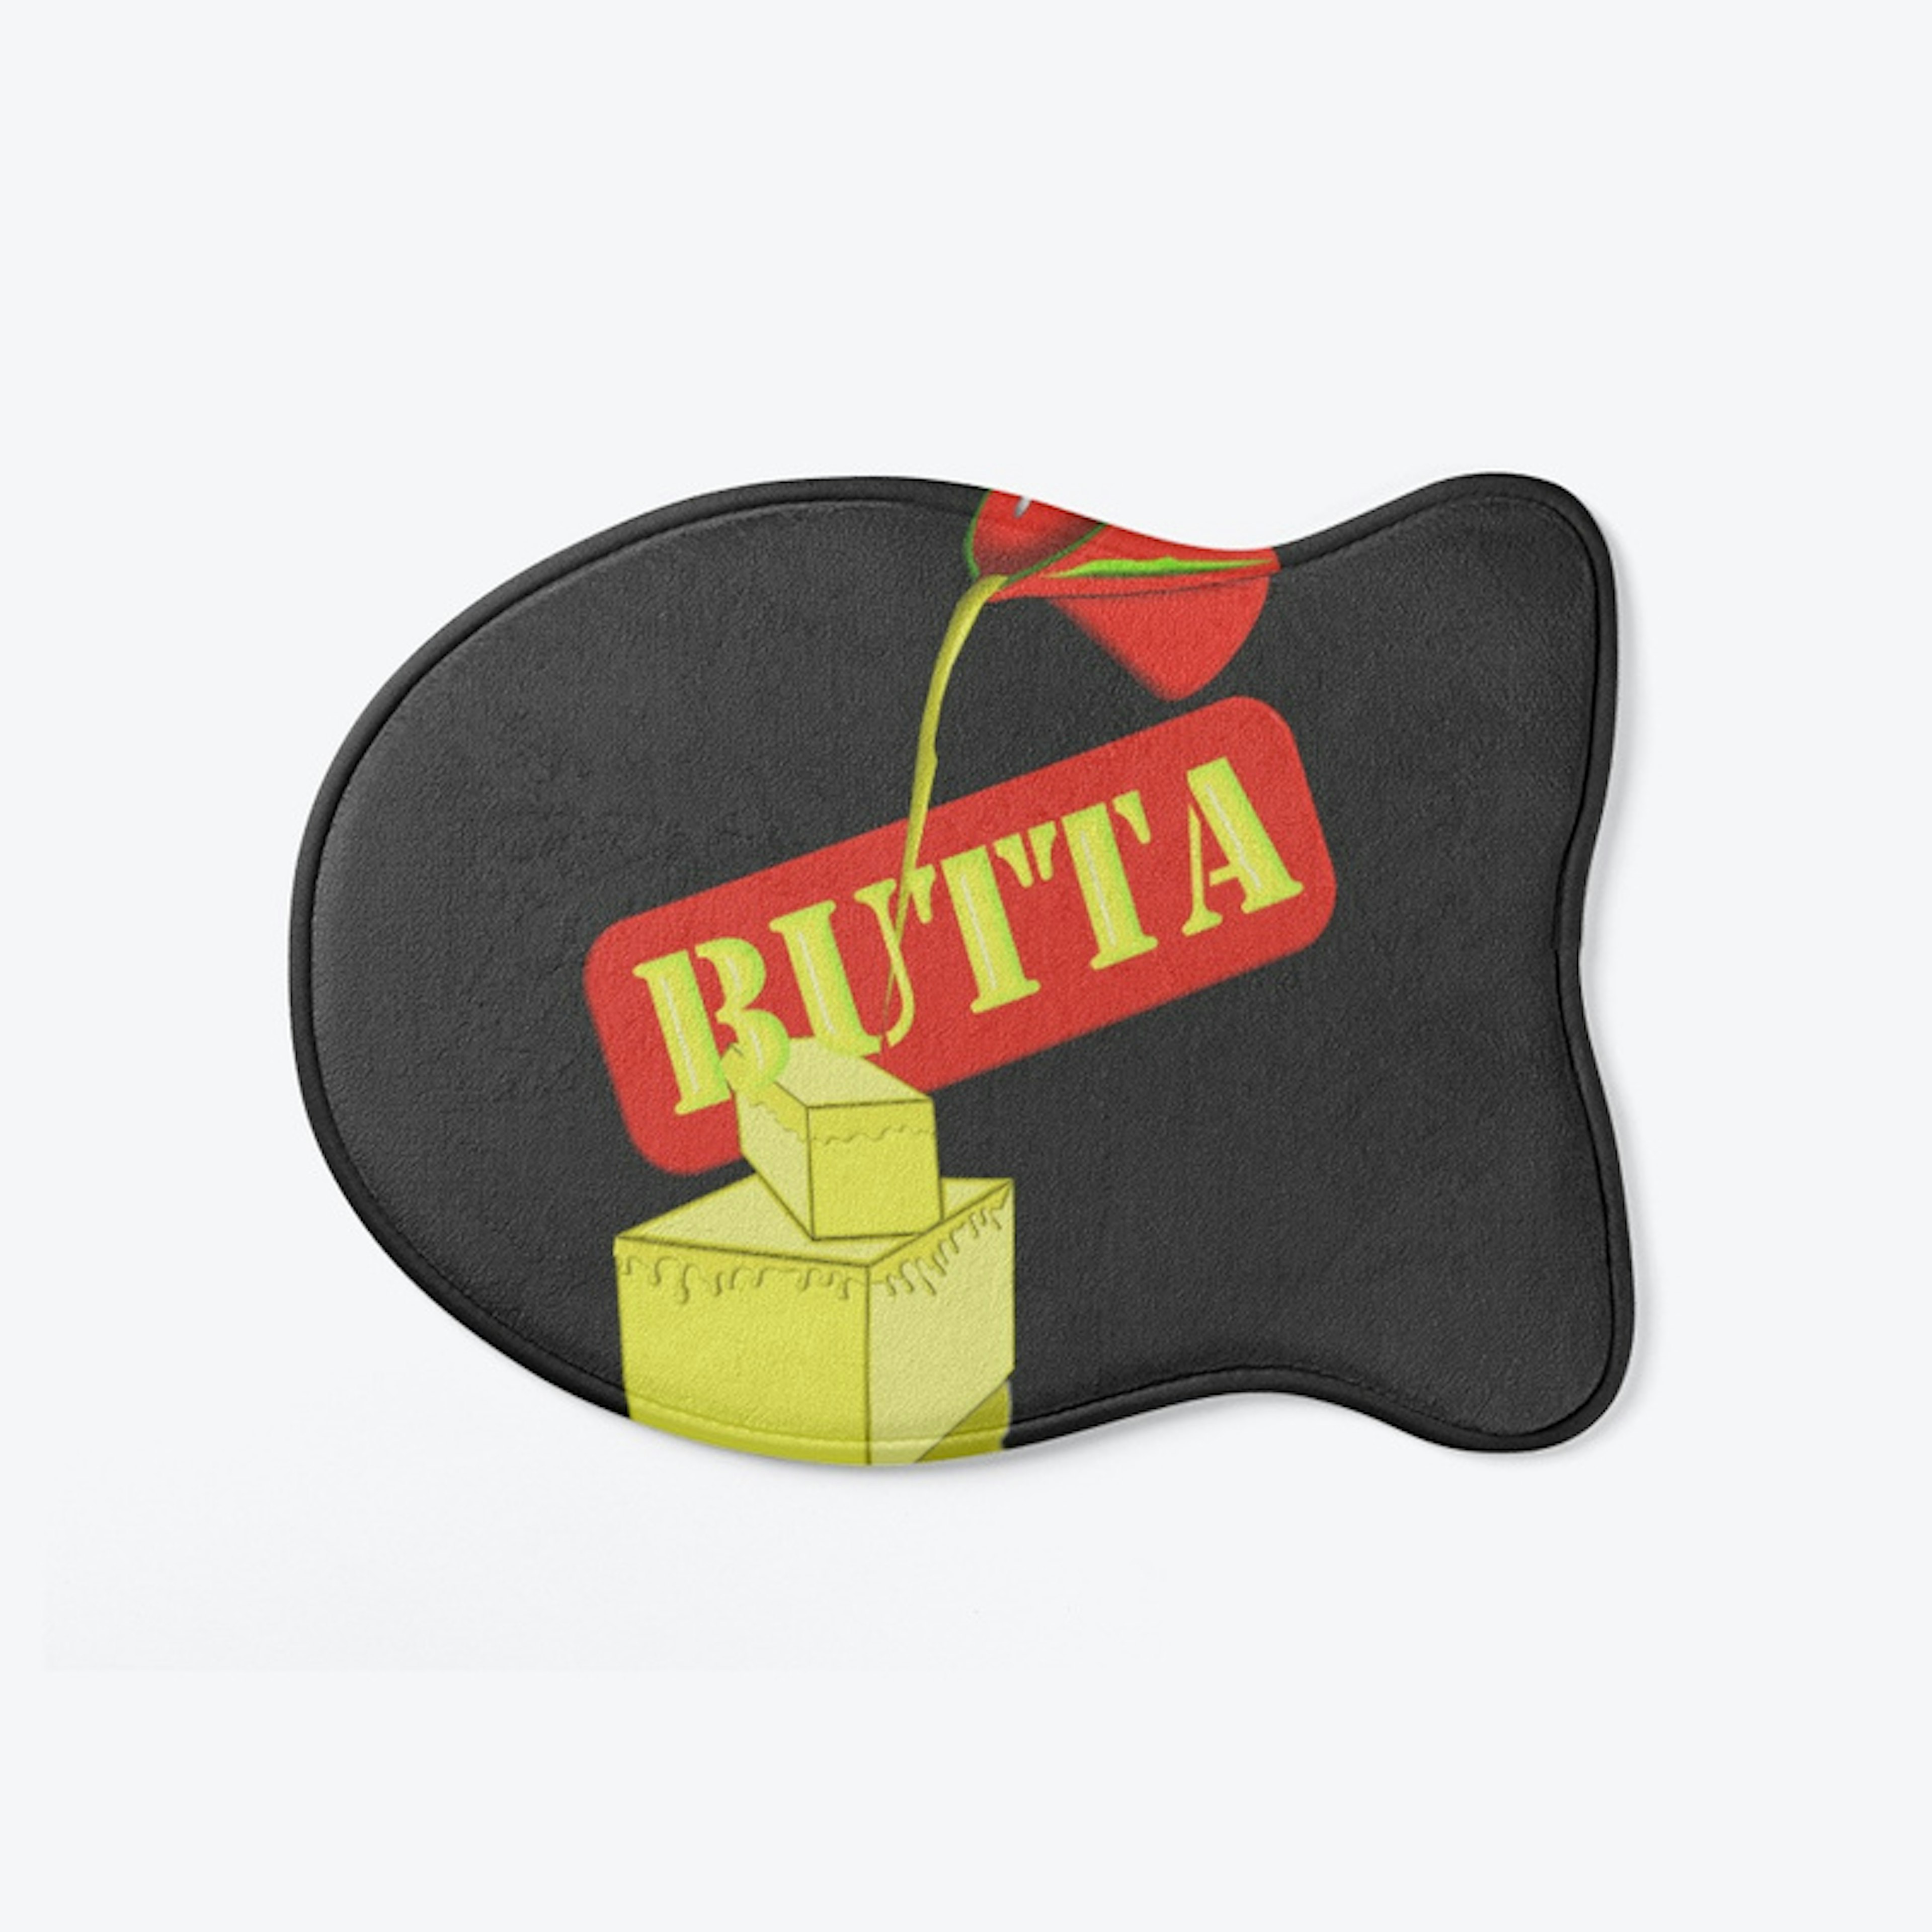 "Butta" rojo collection